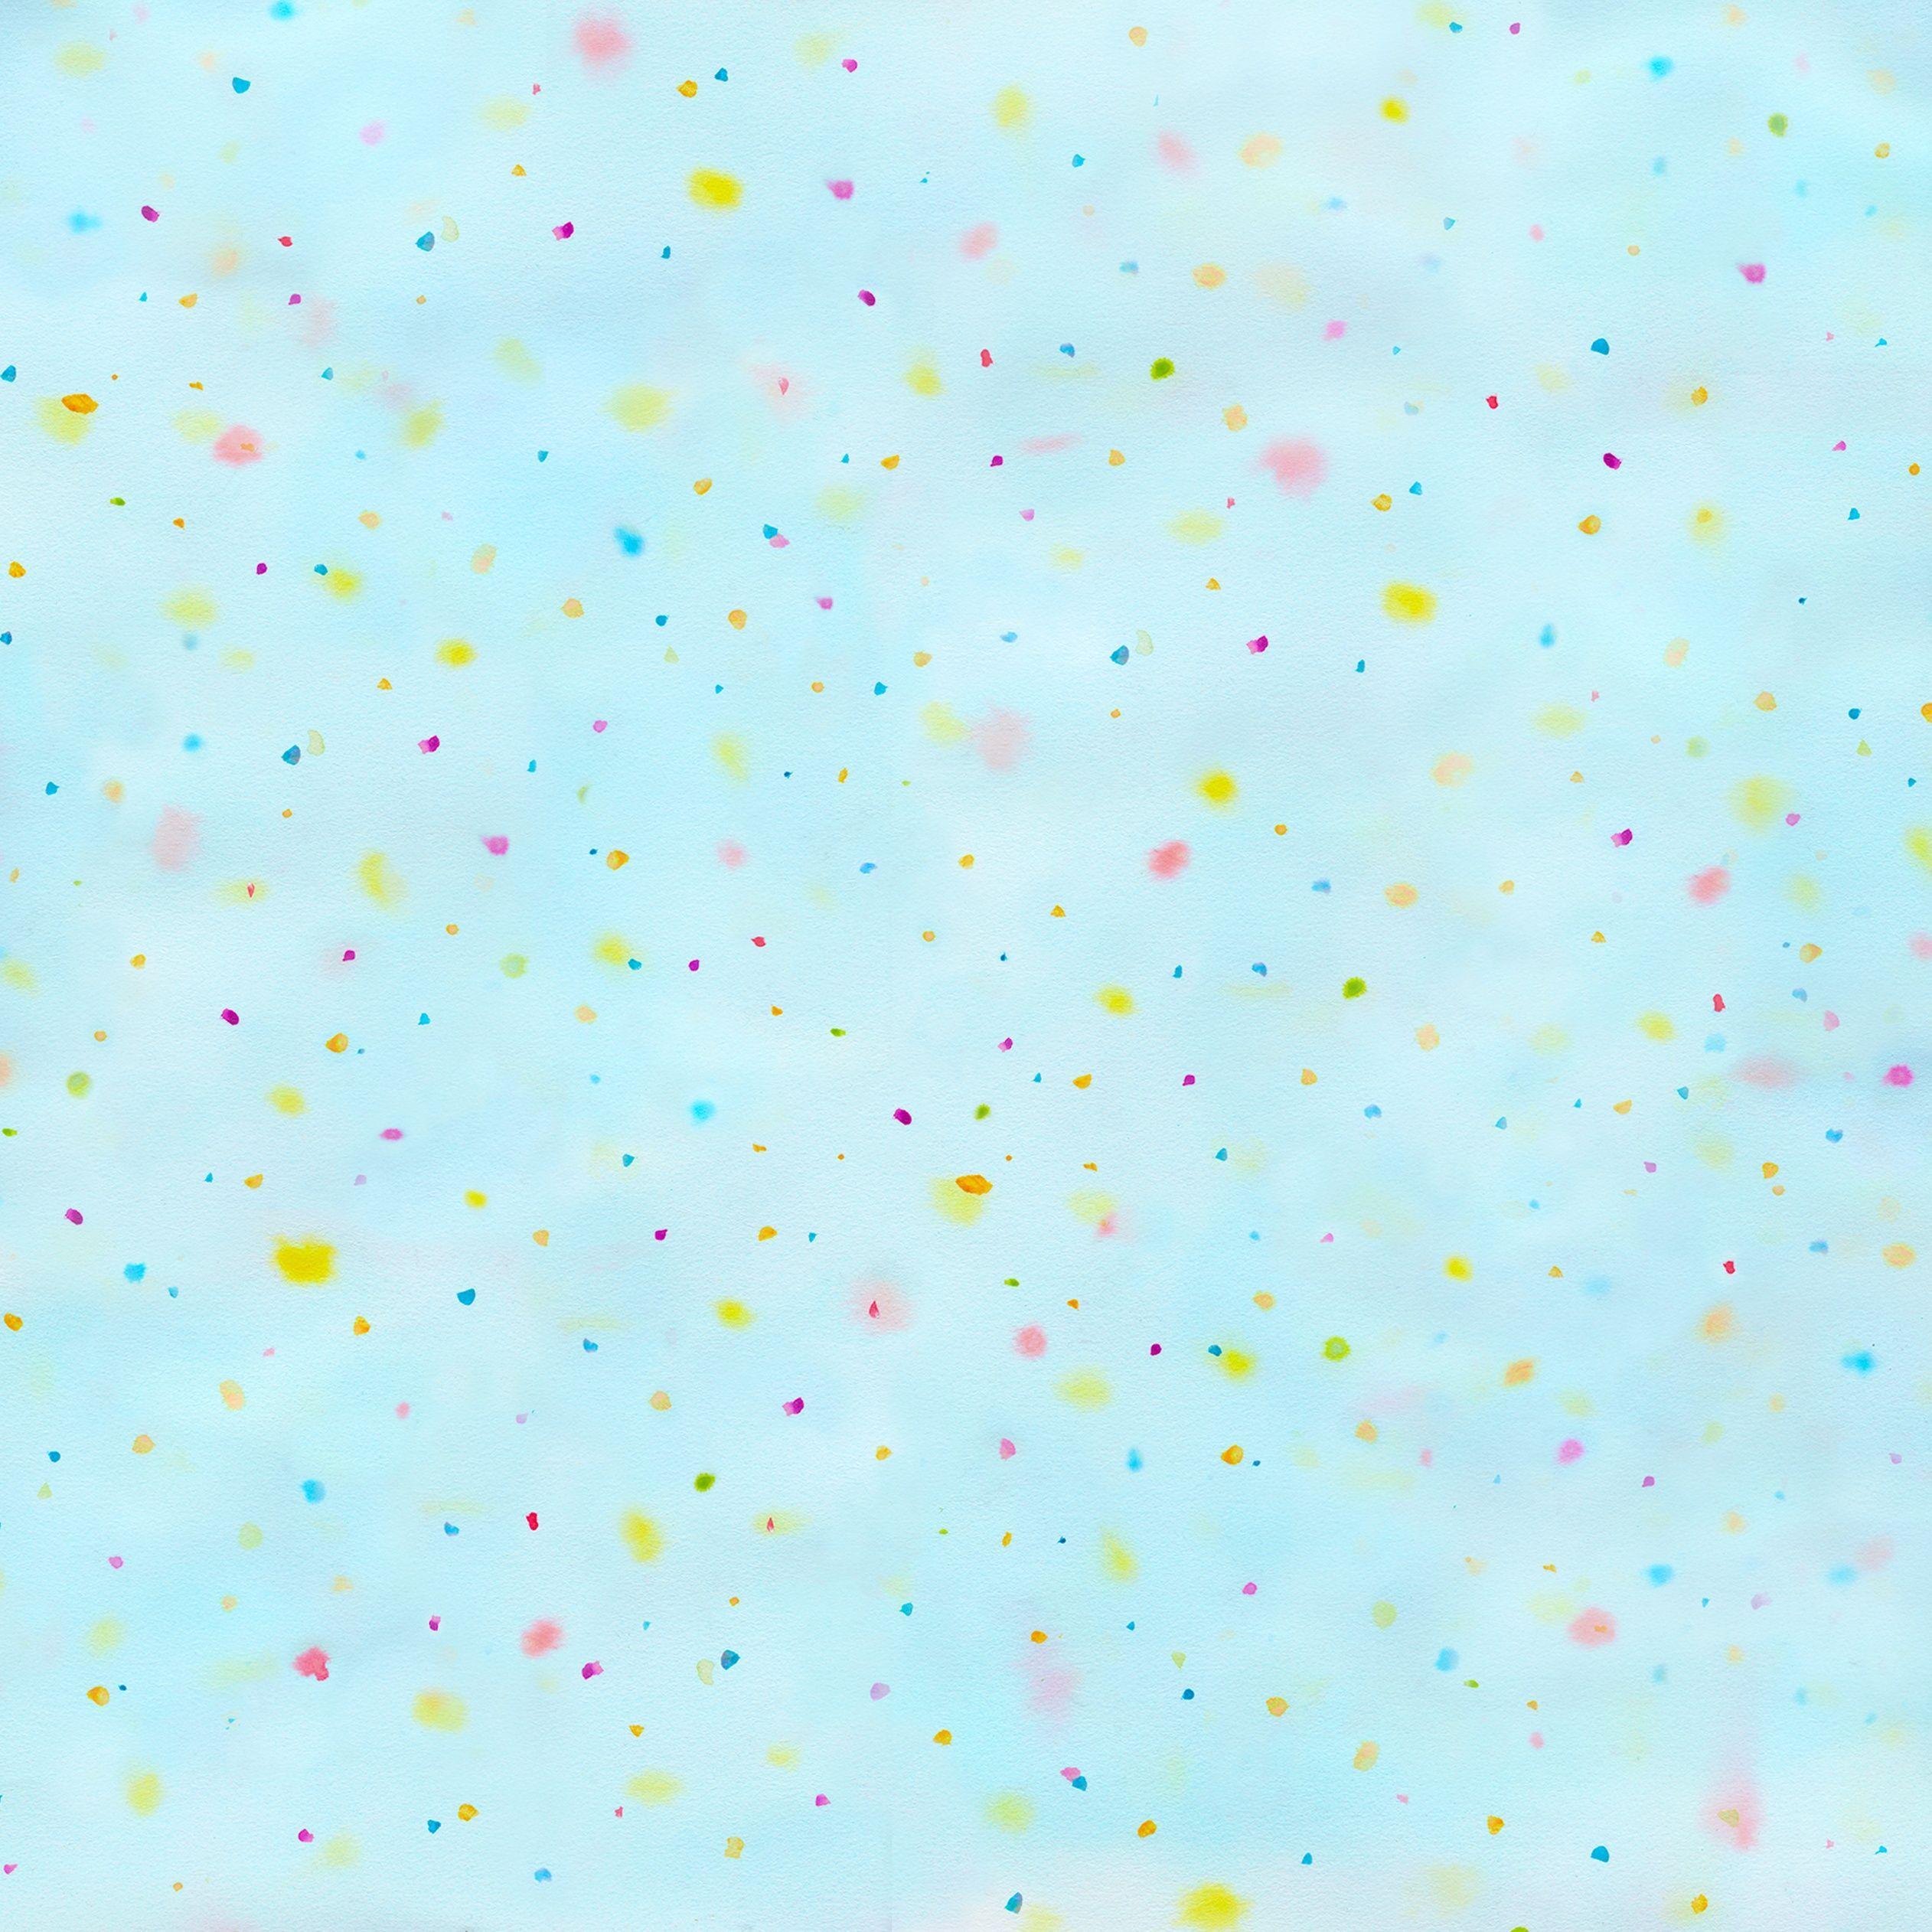 Confetti Wallpapers - Top Free Confetti